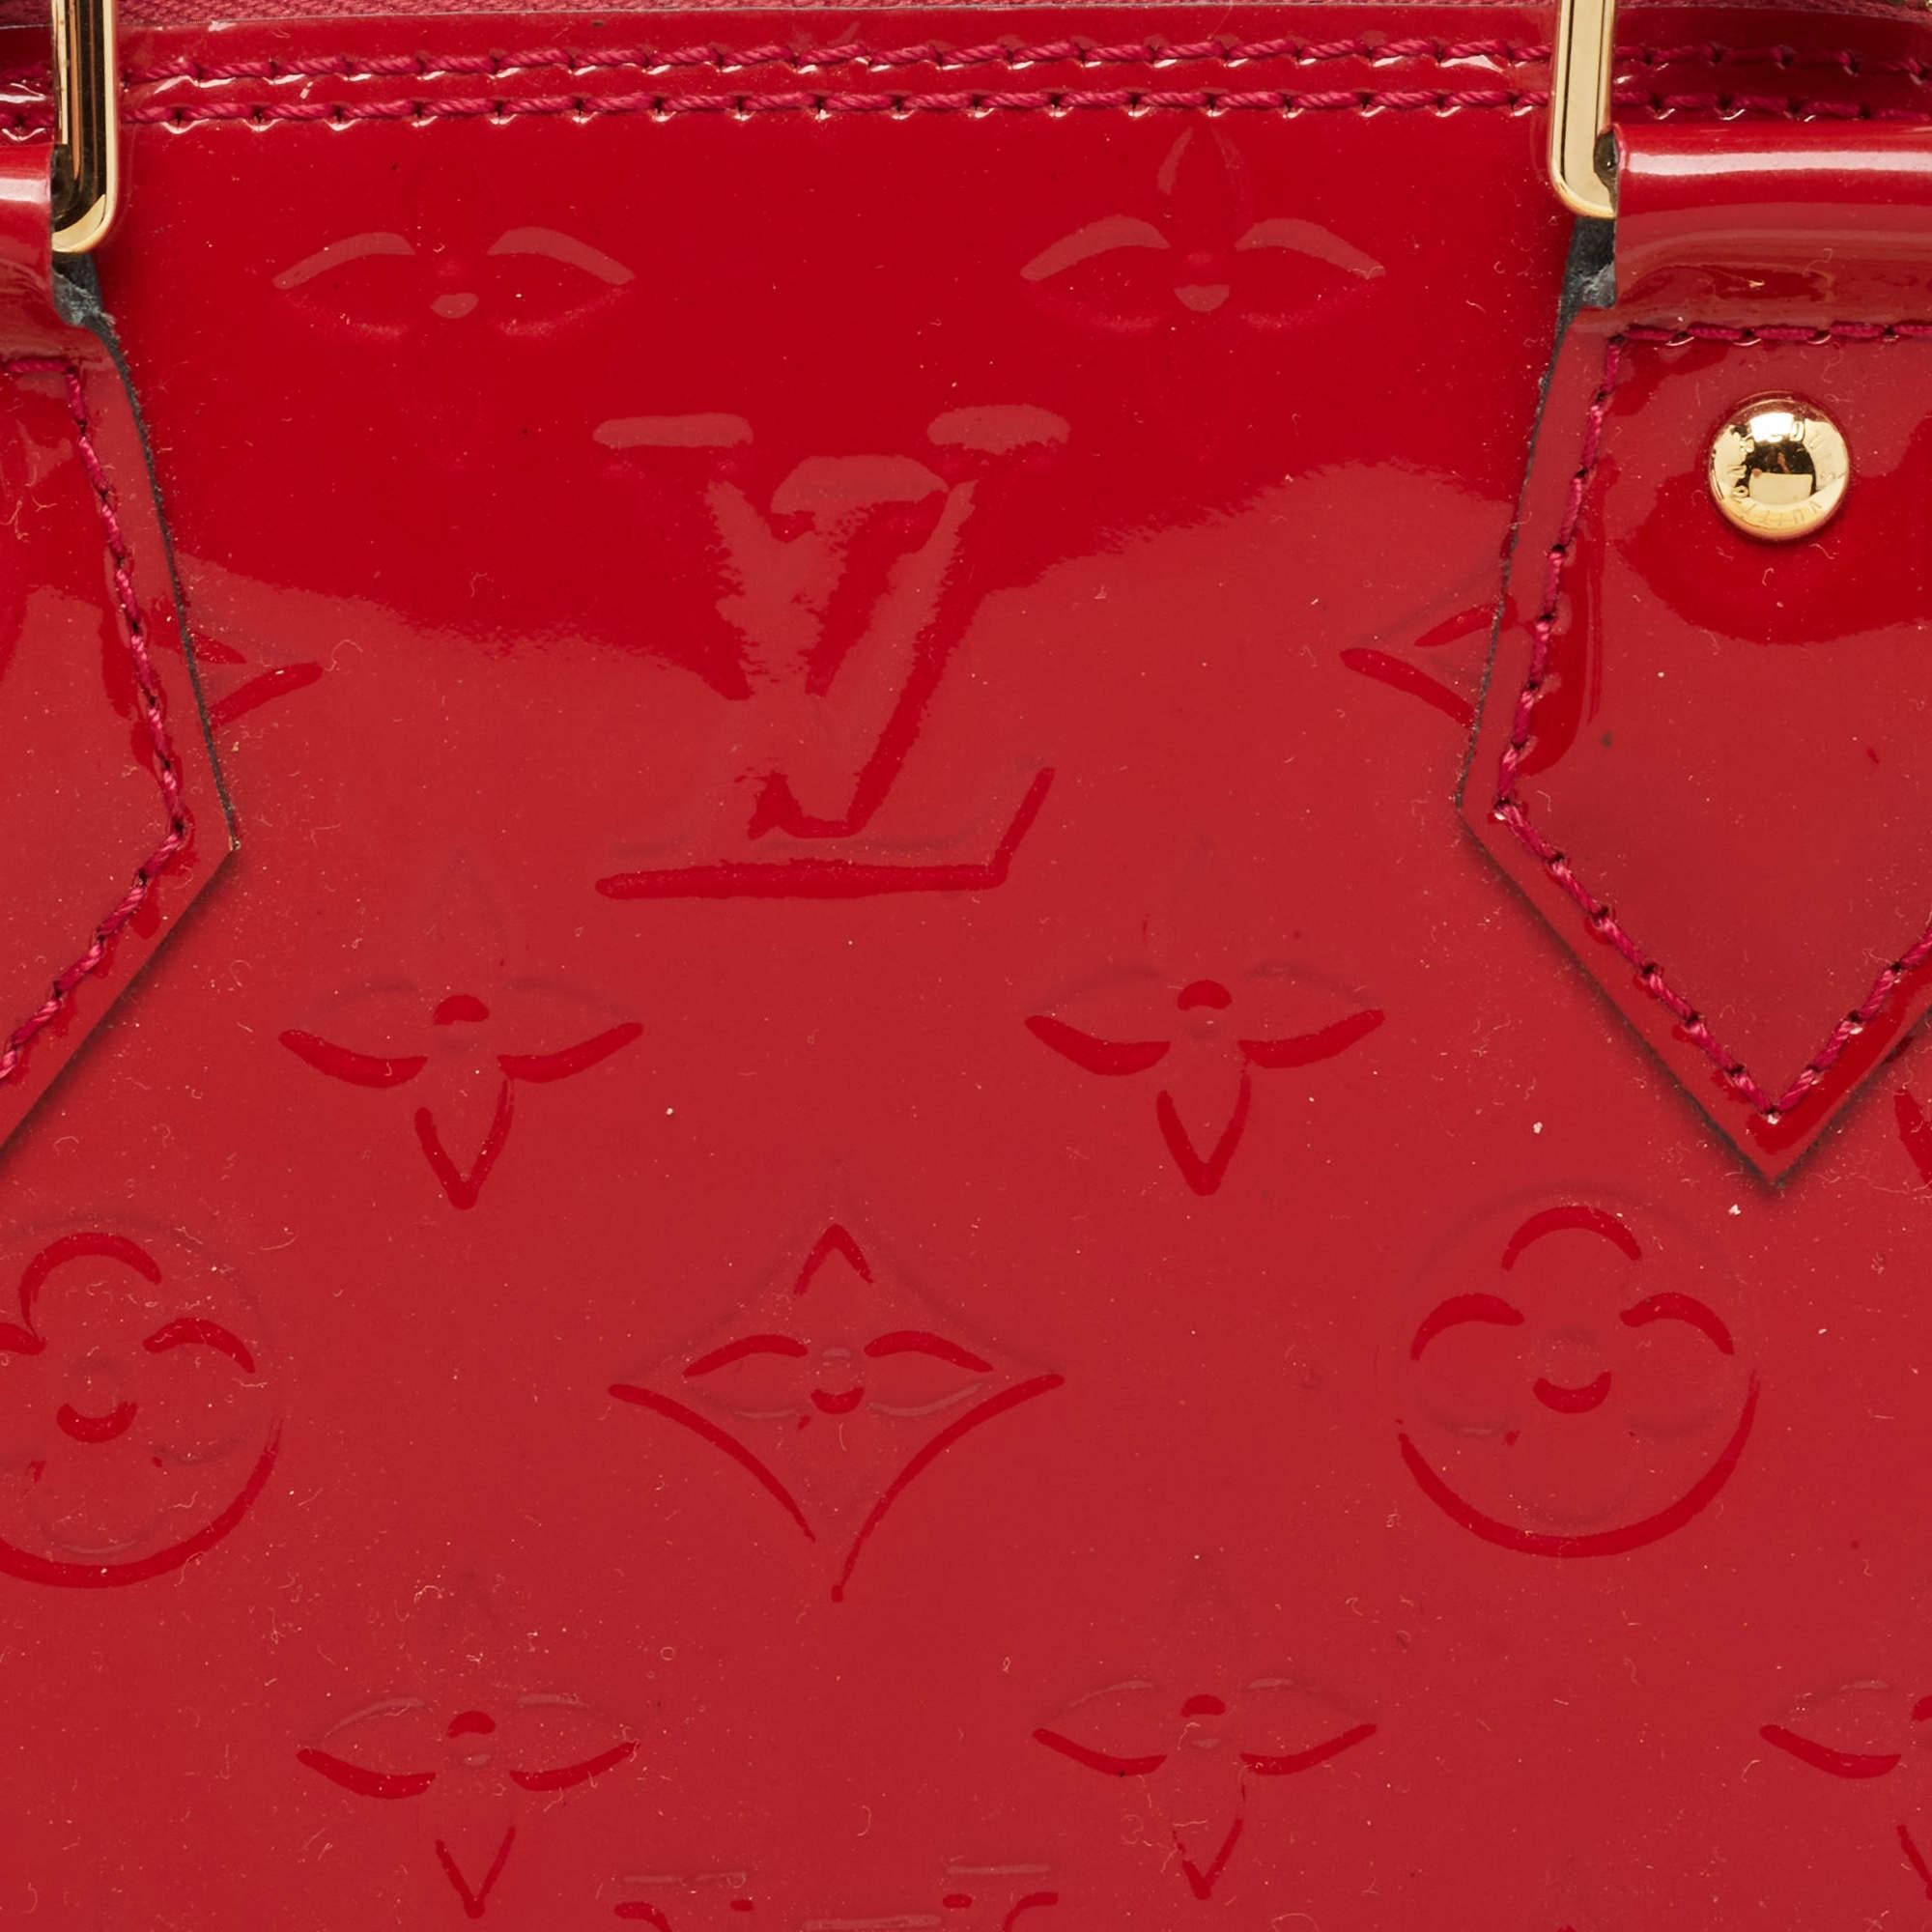 Louis Vuitton Cerise Monogram Vernis Alma BB Bag 1